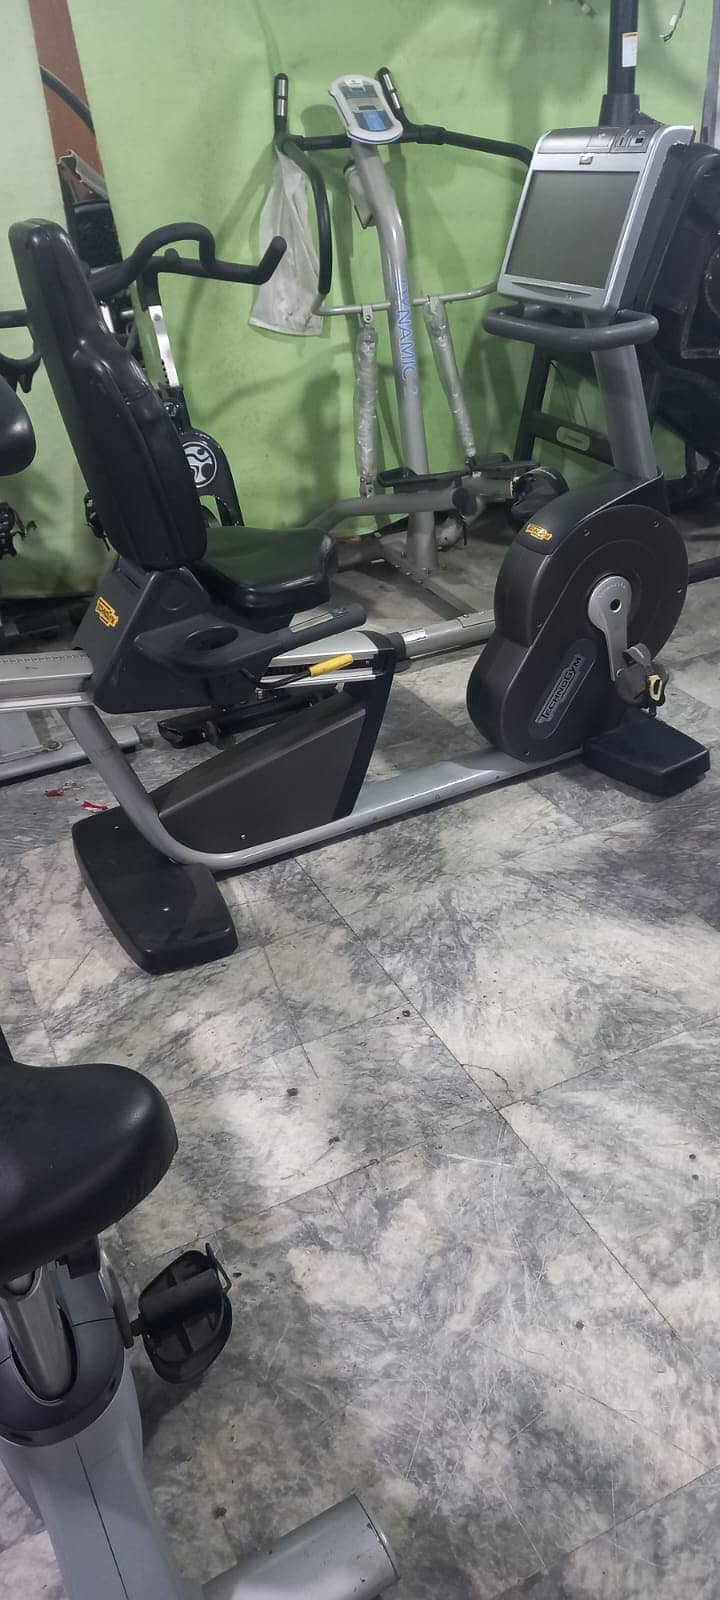 treadmills Technogym Refurbished Running Machine Ellipticals dumbbells 15